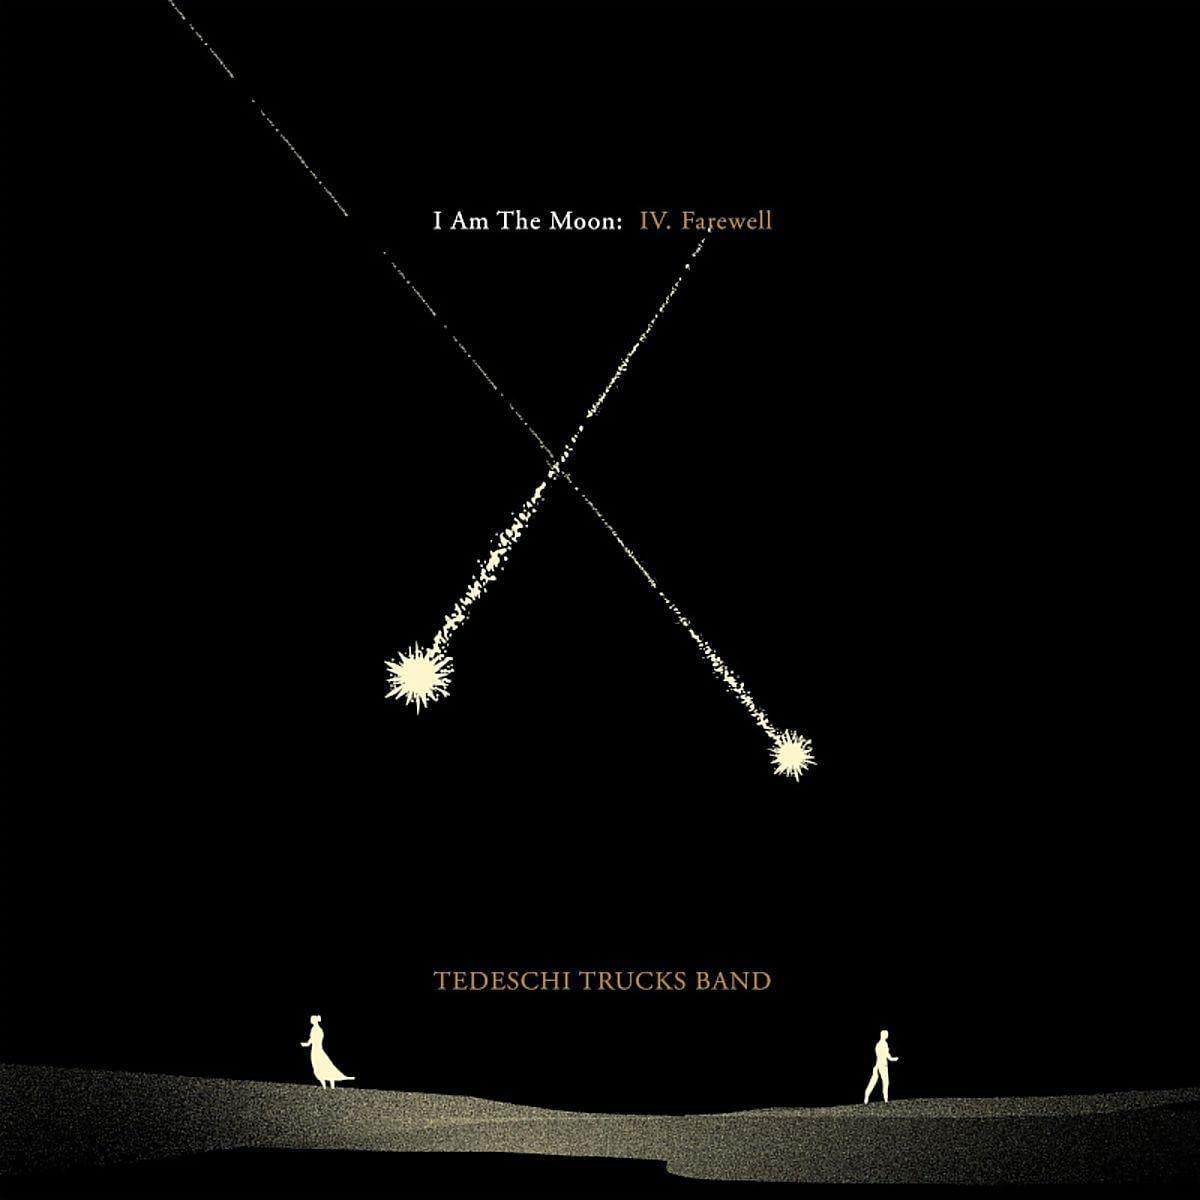 CD - Tedeschi Trucks Band - I Am The Moon: IV. Farewell